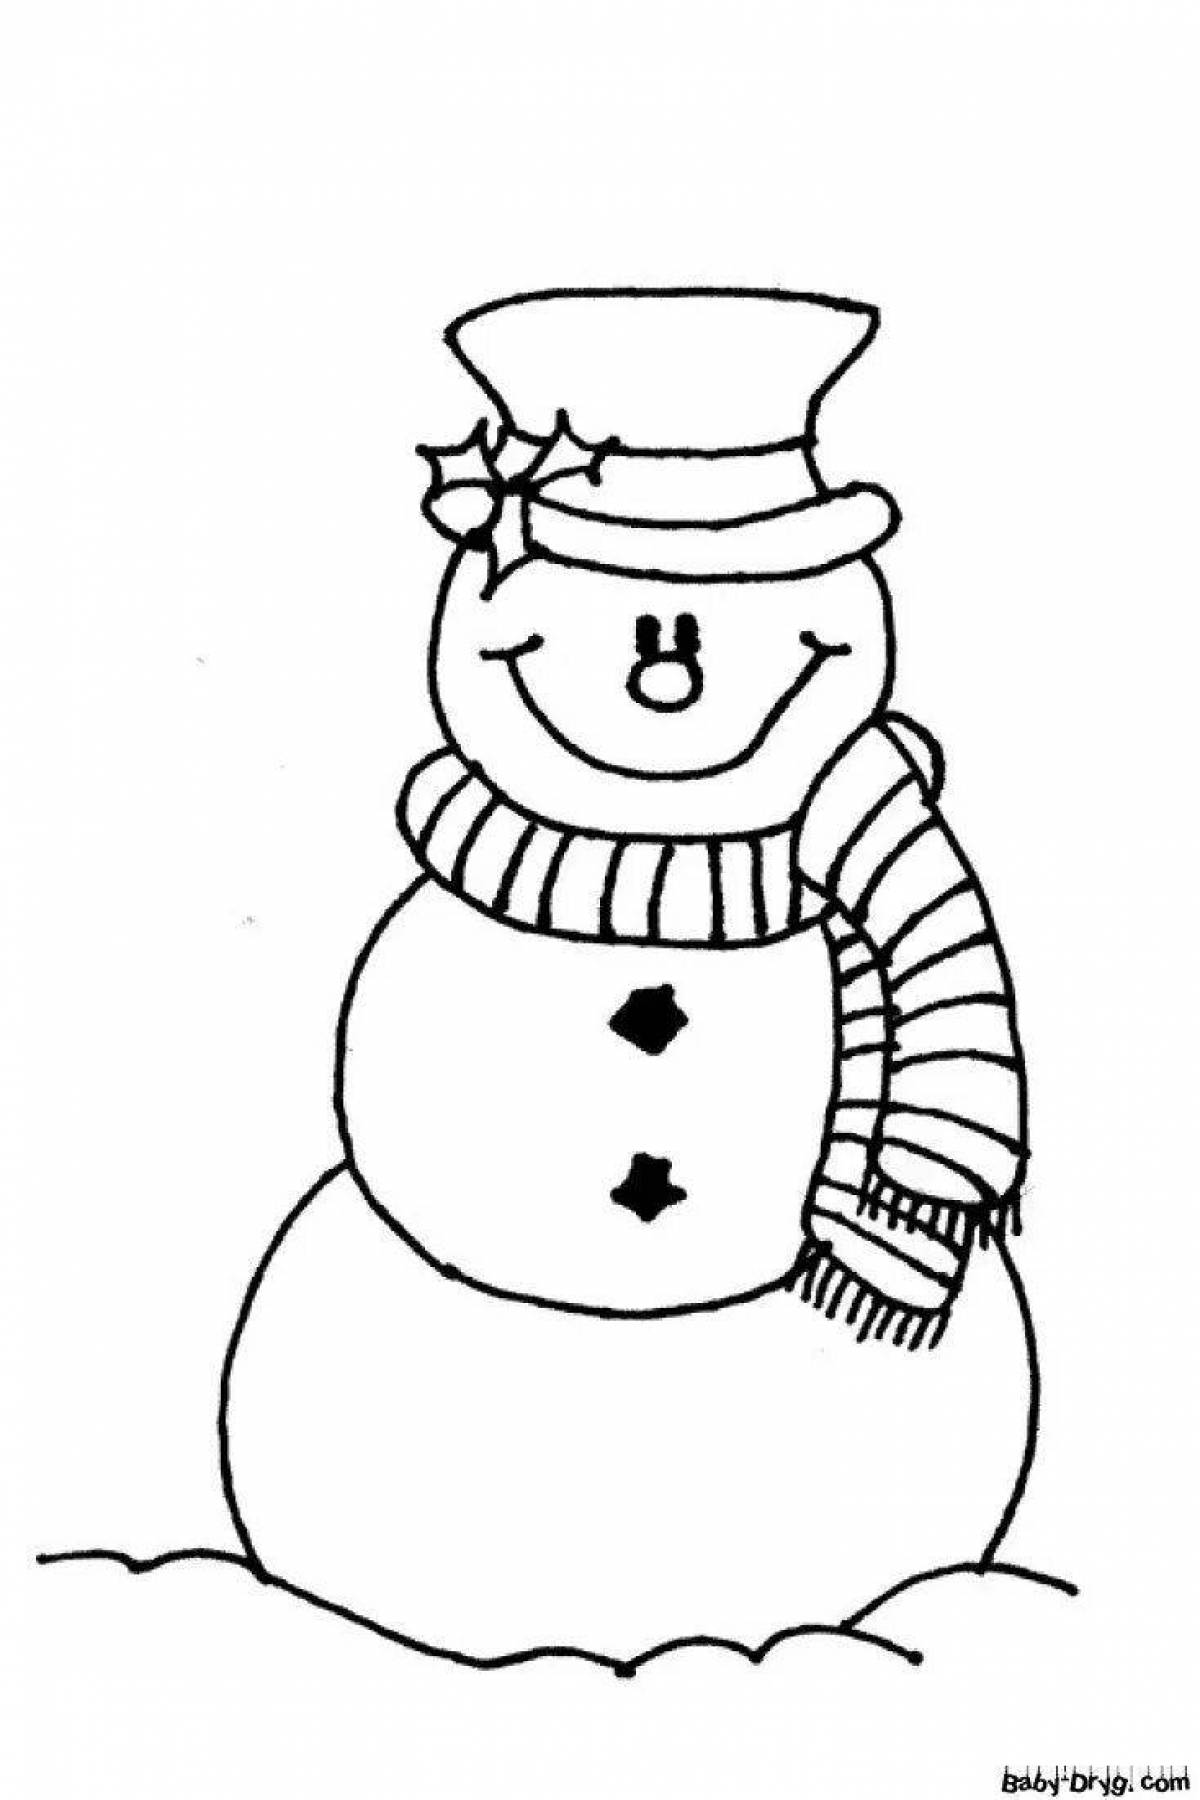 Творческая раскраска смешные снеговики для детей